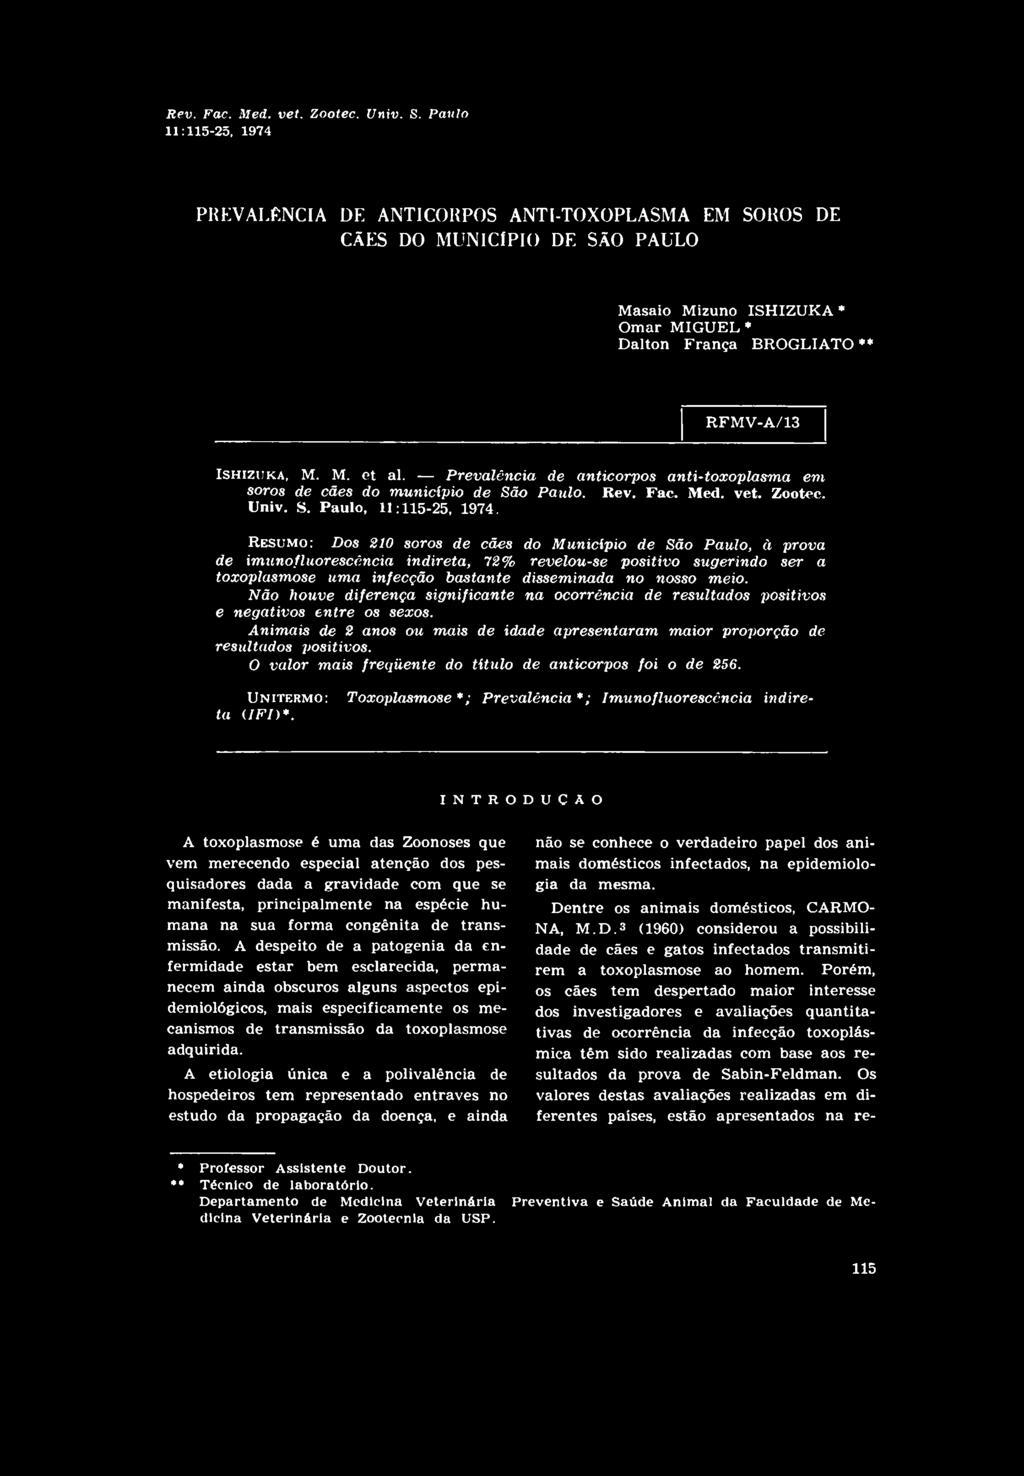 ISHiziiKA, M. M. et al. Prevalência de anticorpos anti-toxoplasma em soros de cães do município de São Paulo.  Paulo, 11:115-25, 1974.